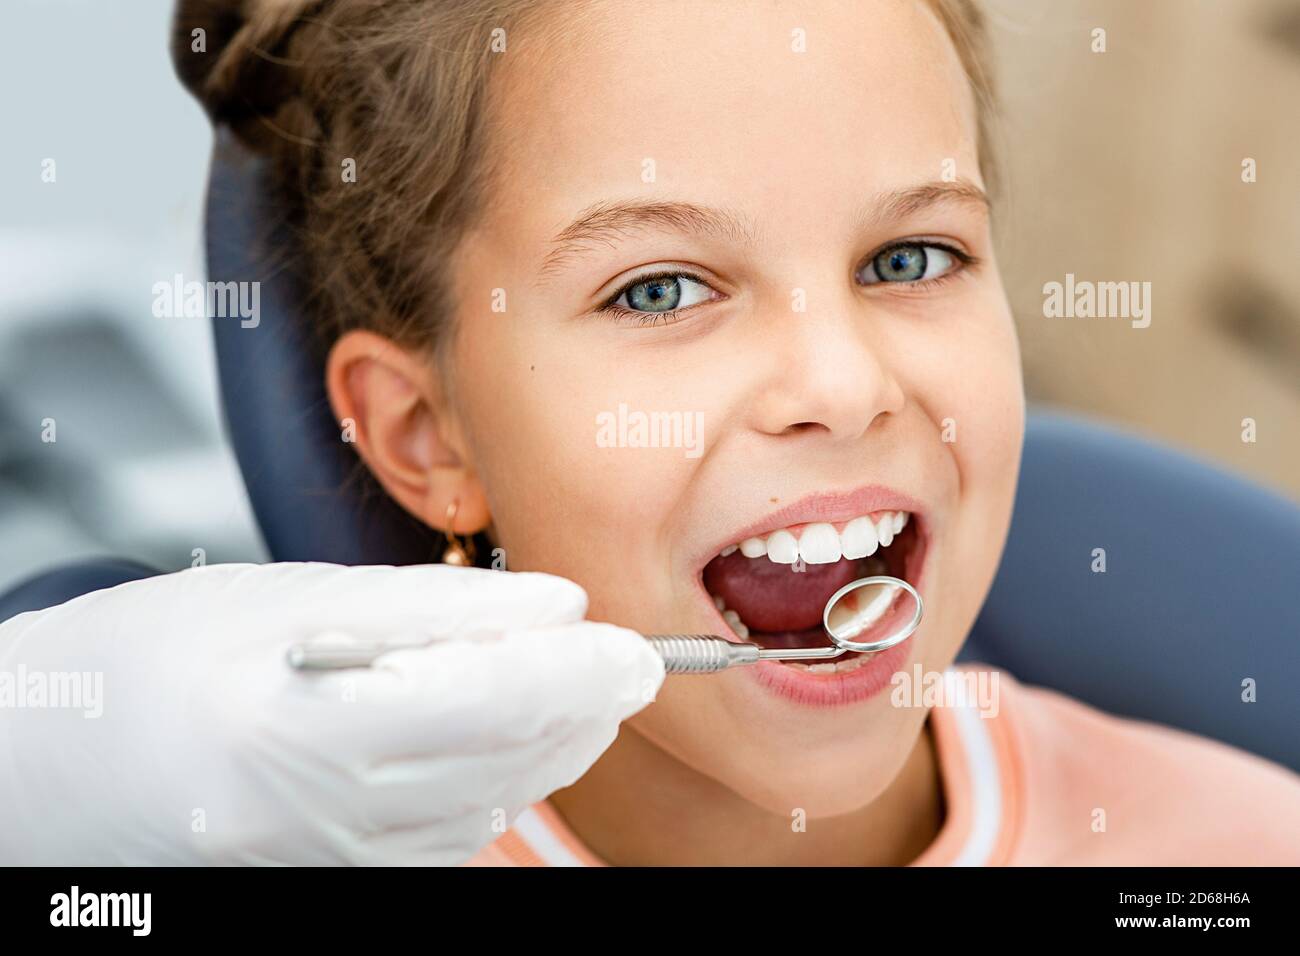 Petite fille souriante, vérification des dents. Examen des dents avec miroir dentaire en gros plan. Traitement des dents de l'enfant Banque D'Images